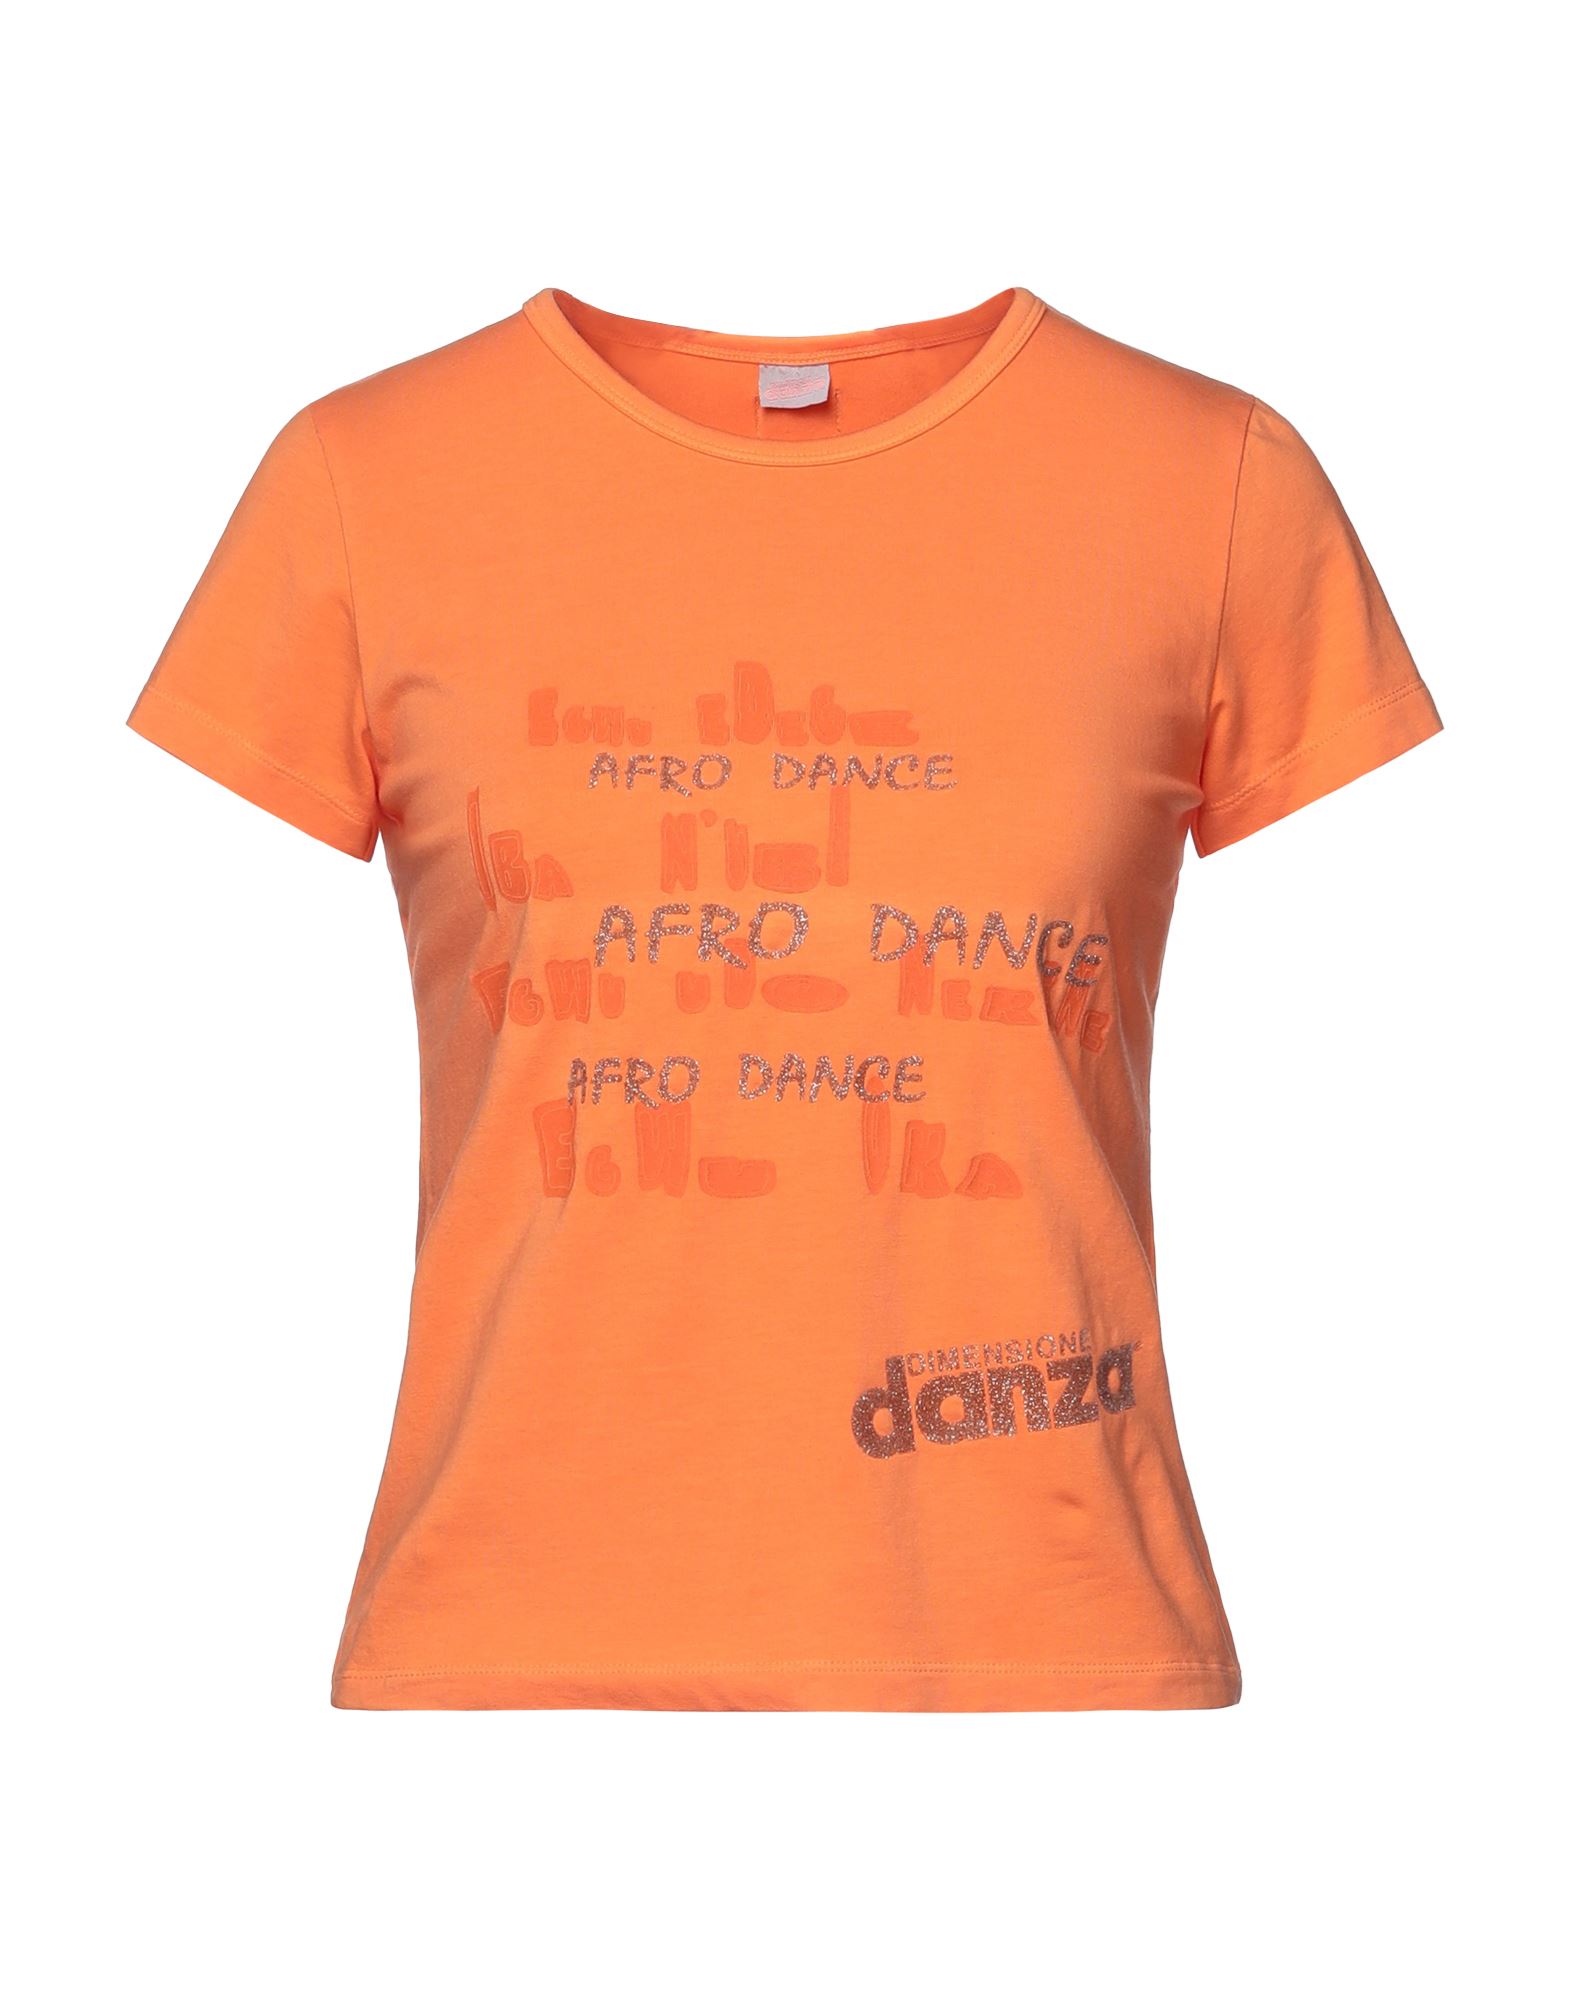 DIMENSIONE DANZA T-shirts